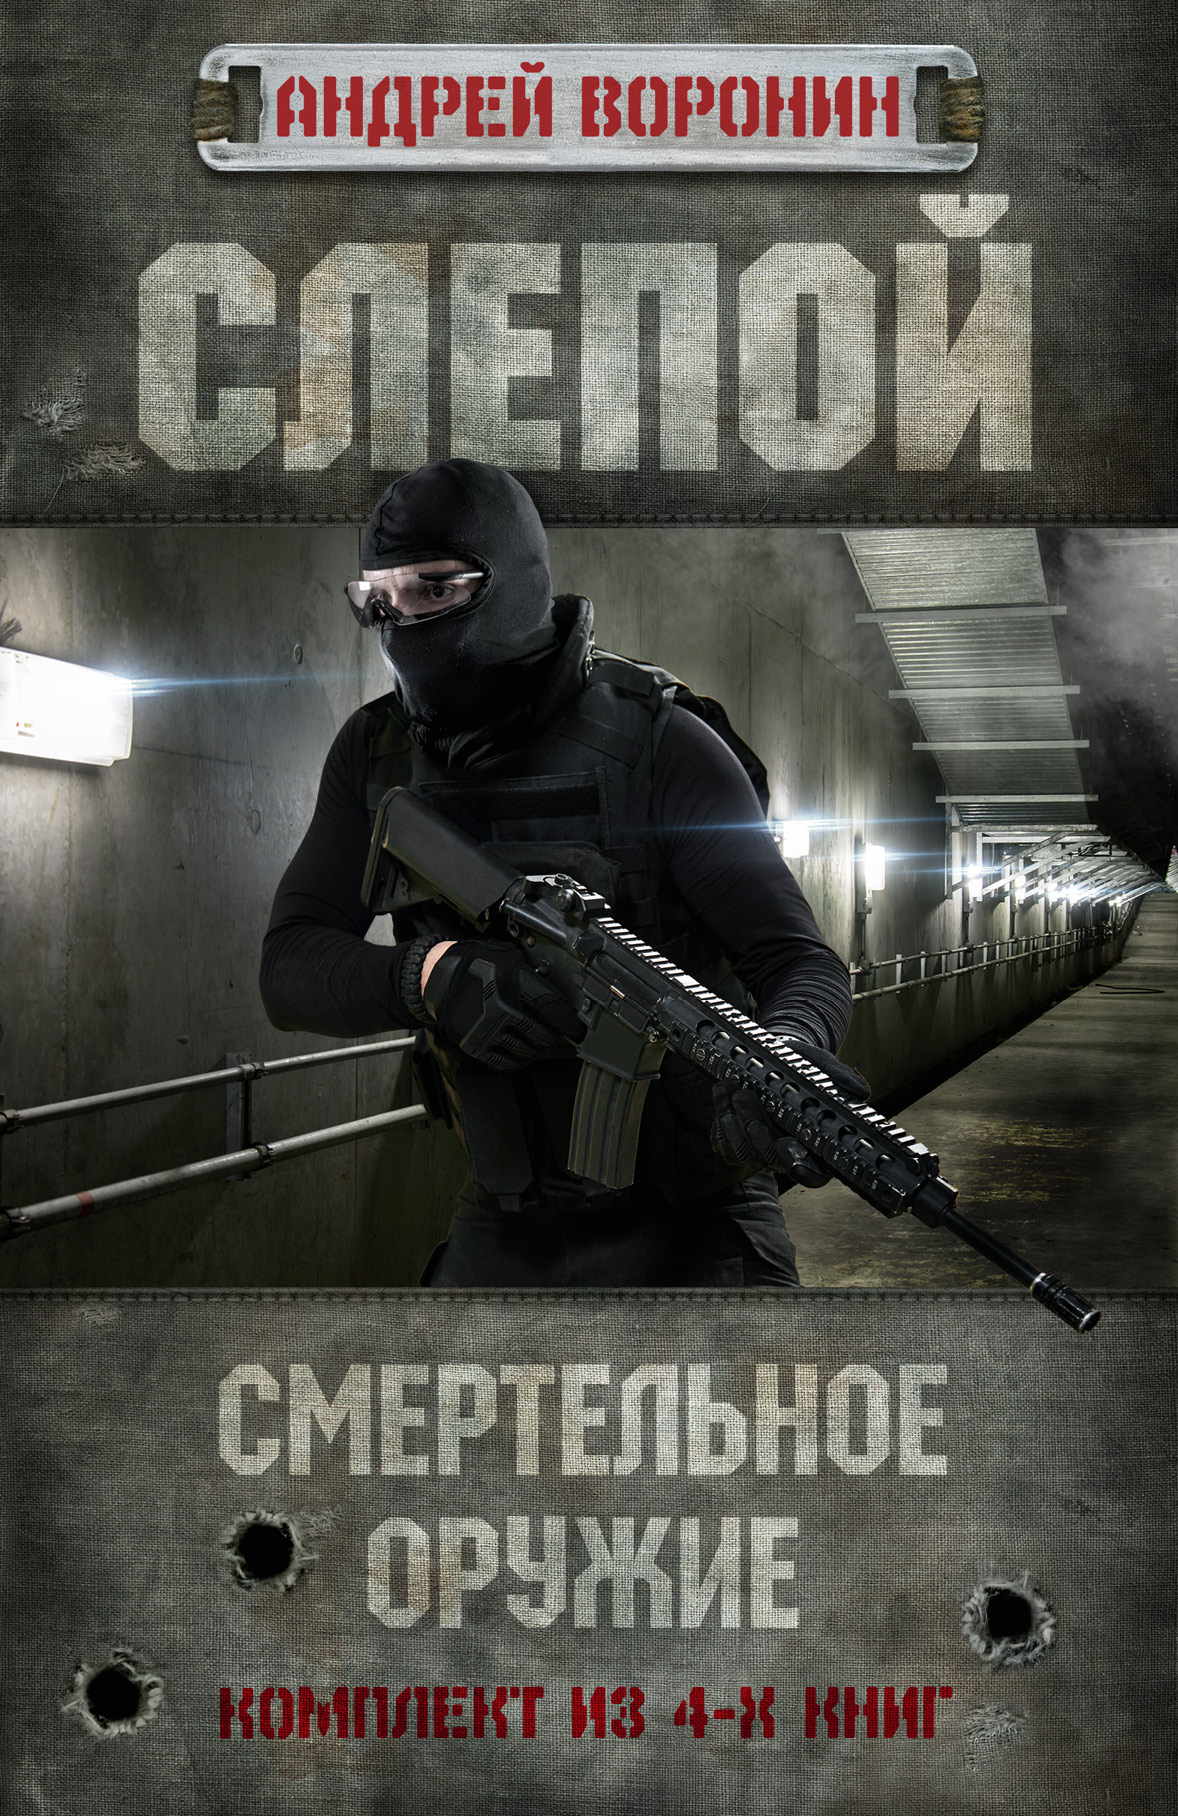 https://cdn.eksmo.ru/v2/ASE000000000722300/COVER/cover3d1.jpg